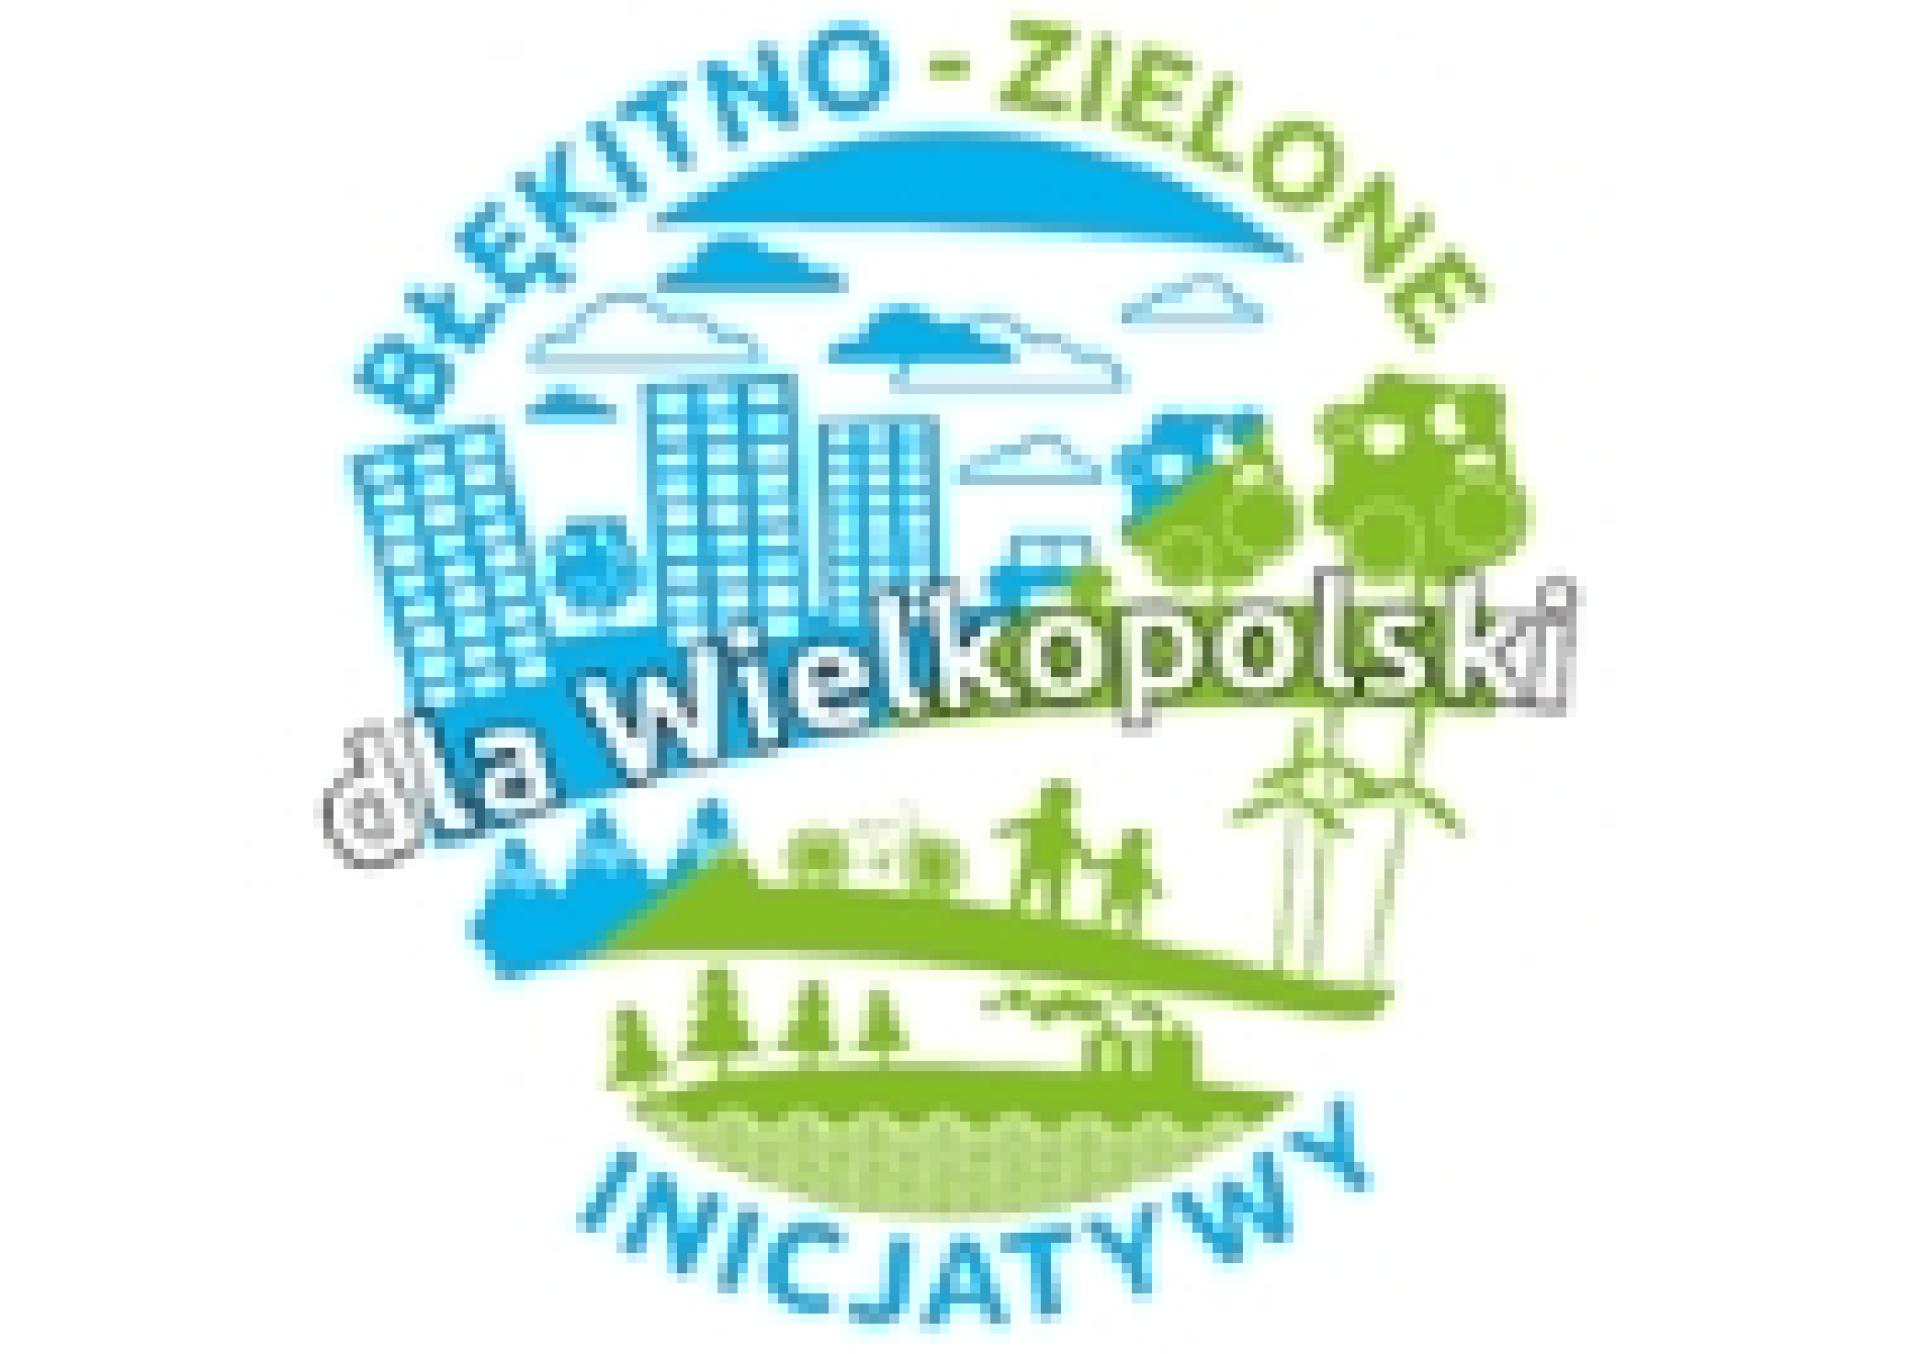 Program pn. Błękitno-zielone  inicjatywy dla Wielkopolski - zobacz więcej